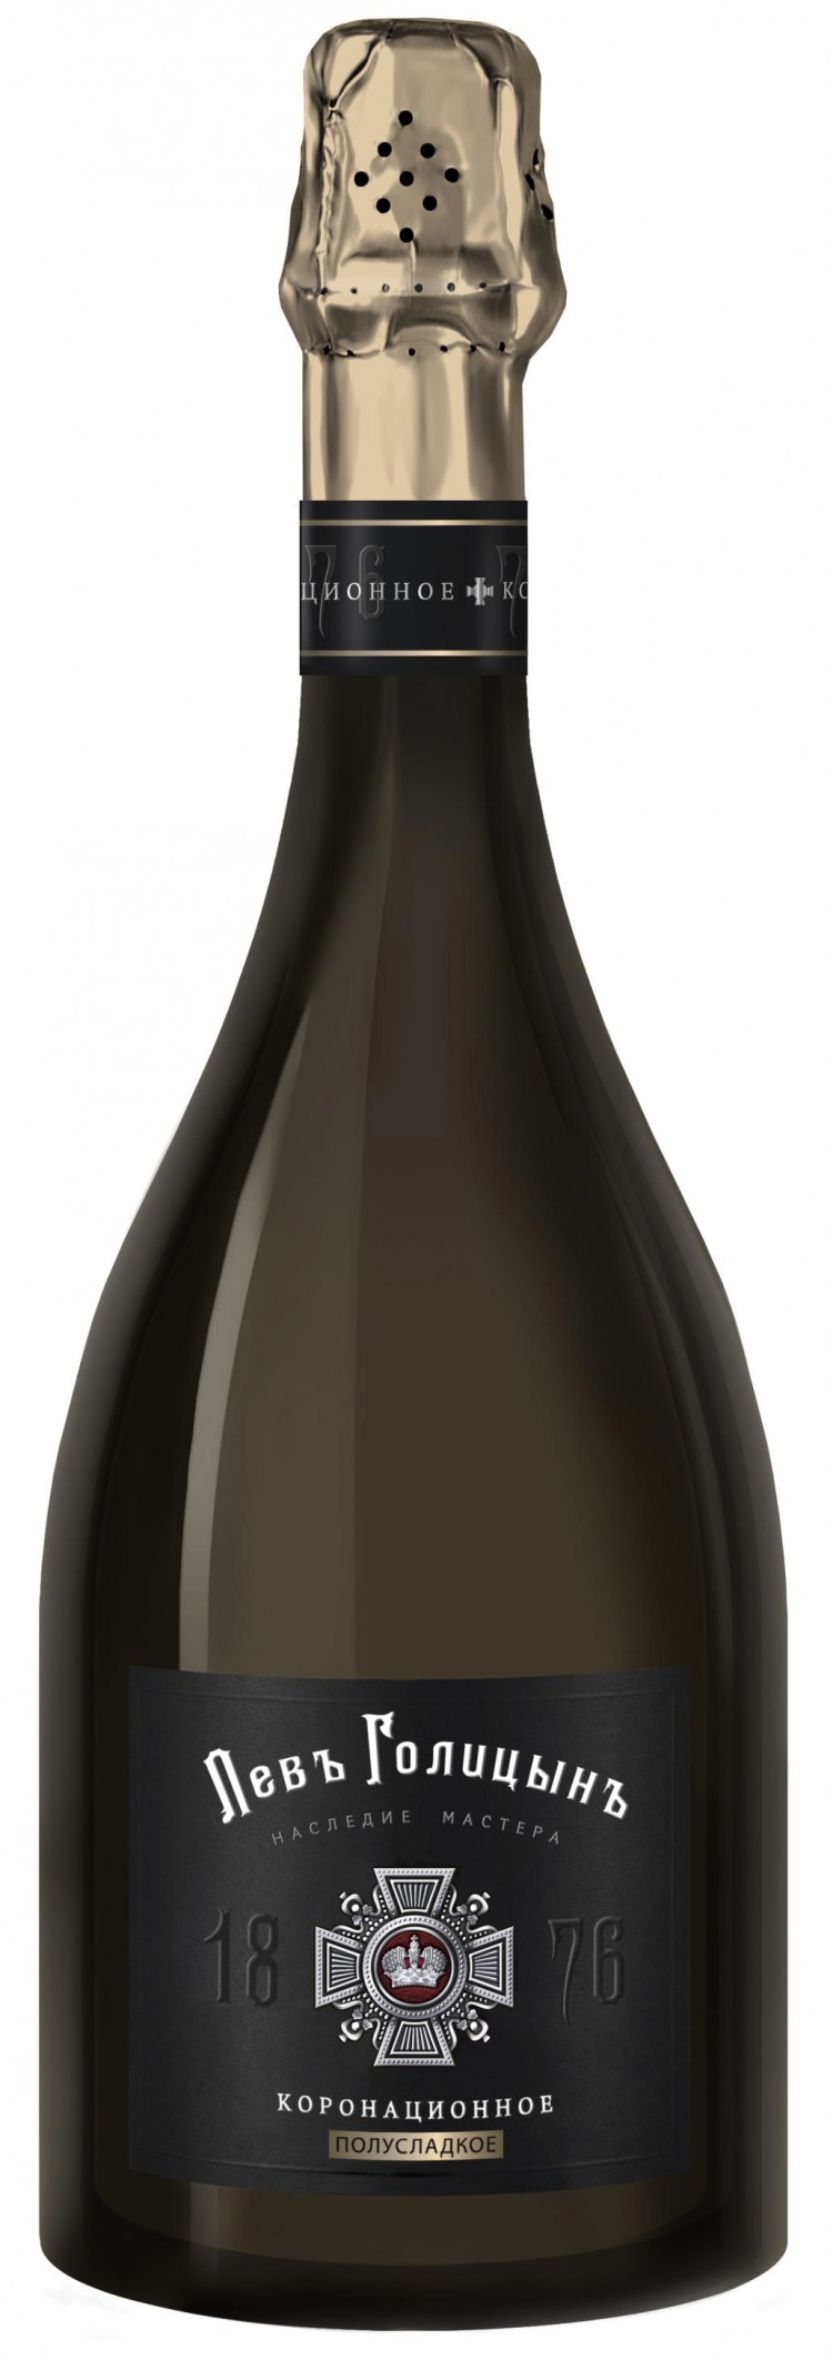 Игристое вино Наследие Мастера "Левъ Голицынъ Коронационное", белое полусладкое, 0.75 л